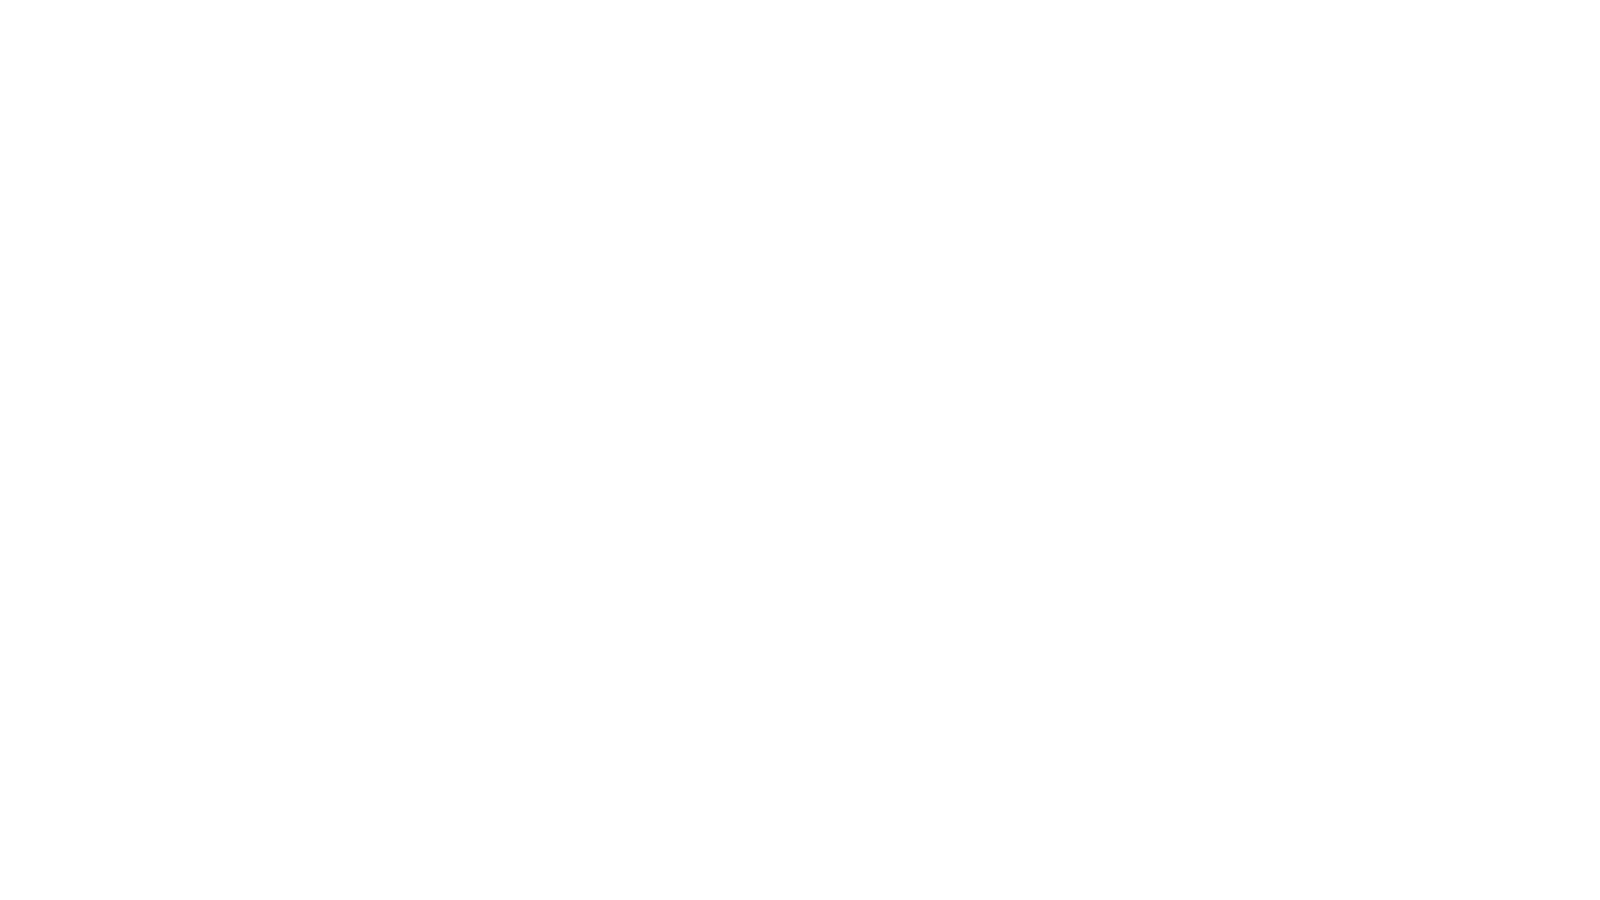 Biển Hiflex Tạp Hóa Đẹp

----------------------------------------//----------------------------------------------
Anh Hiền: 0964 82 52 52
-
Liên Hệ Thi Công Bảng Hiệu Quảng Cáo - Chuỗi Bảng Hiệu
https://chuoibanghieu.com/
https://banghieugo.com/
https://khoimoc.com/
http://thicongbanghieu.vn/
Fanpage: https://www.facebook.com/QuangCao.KhoiMoc/